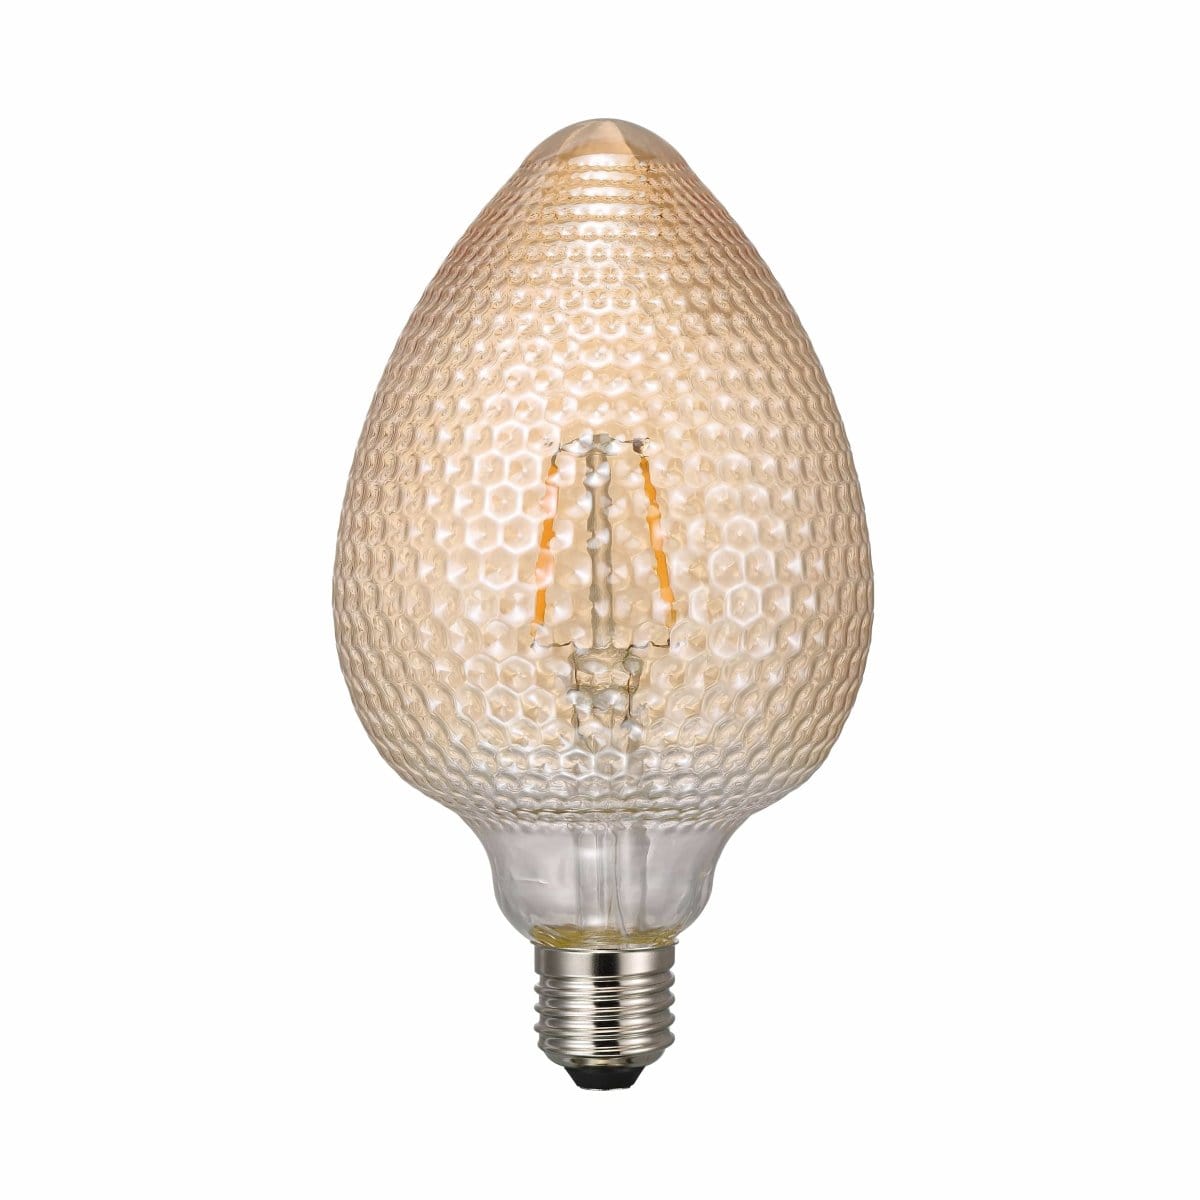 Heavenly Chandeliers Light Bulbs Decorative Avra E27 nut shaped light bulb, amber